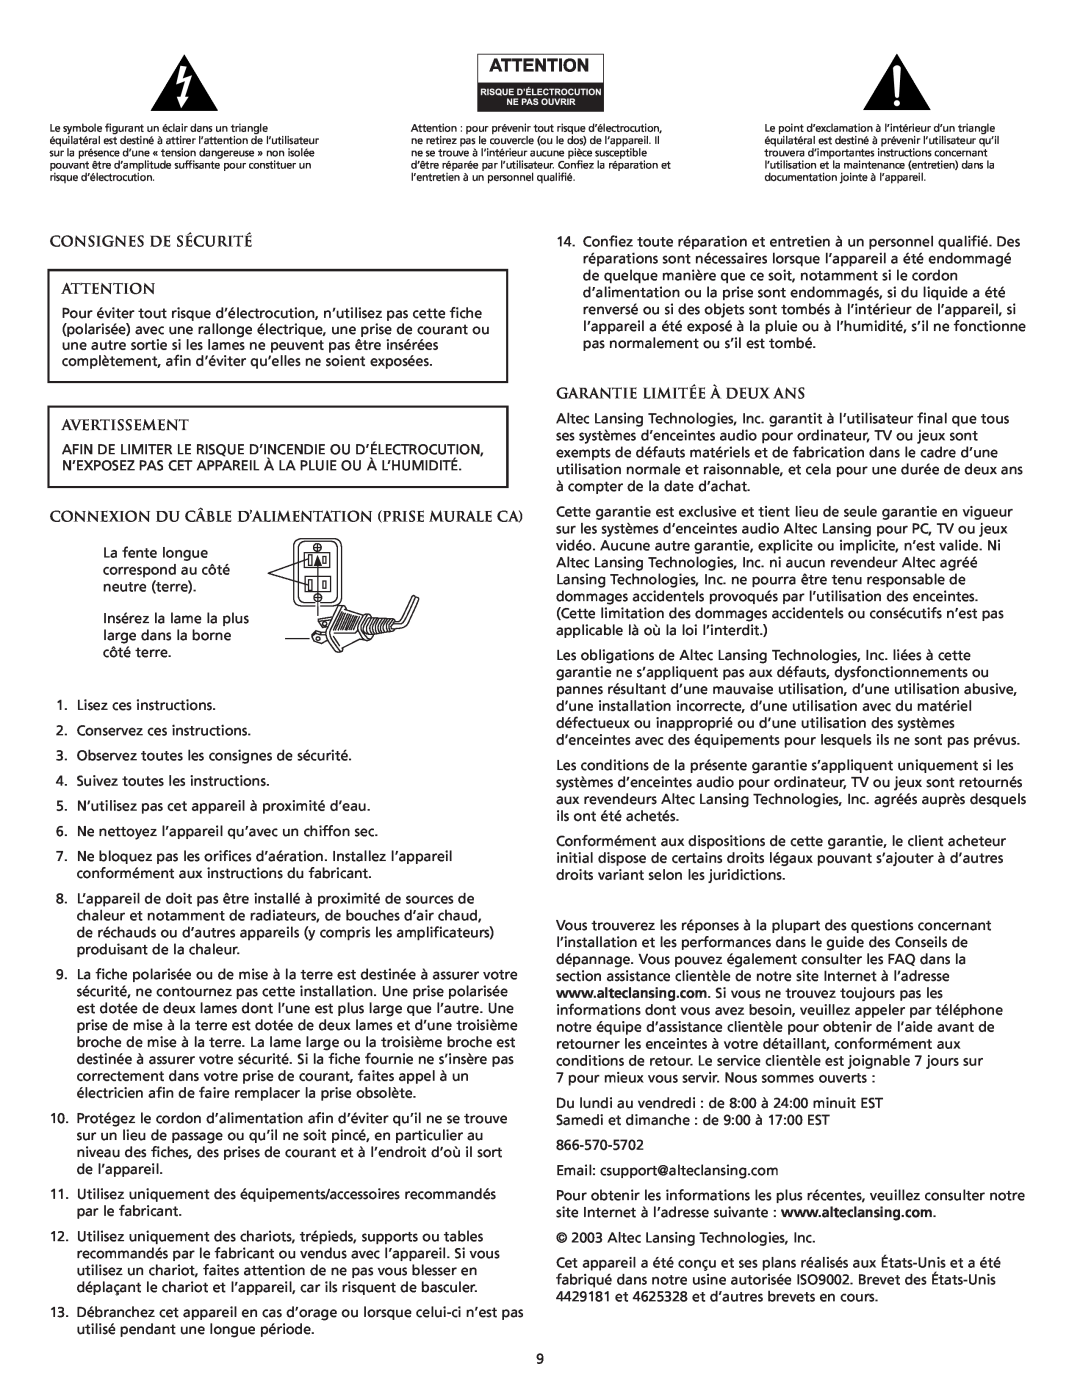 Altec Lansing VS4121 manual Consignes De Sécurité, Avertissement, Connexion Du Câble D’Alimentation Prise Murale Ca 